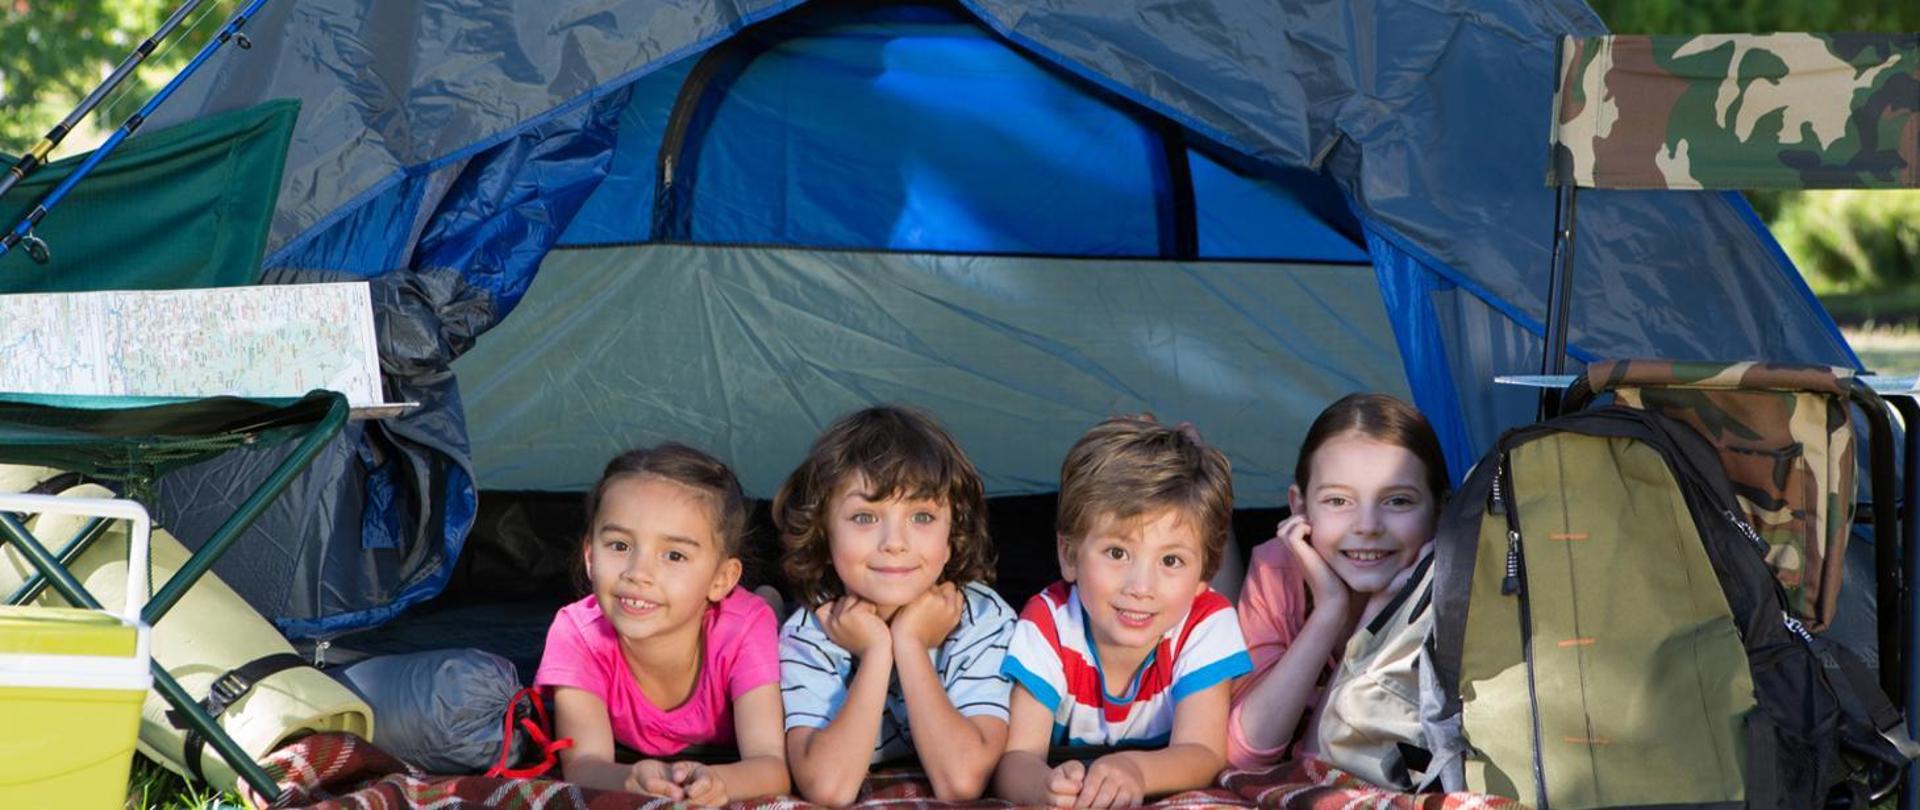 w otwartym namiocie czwórka dzieci wyglądająca z wejścia do namiotu